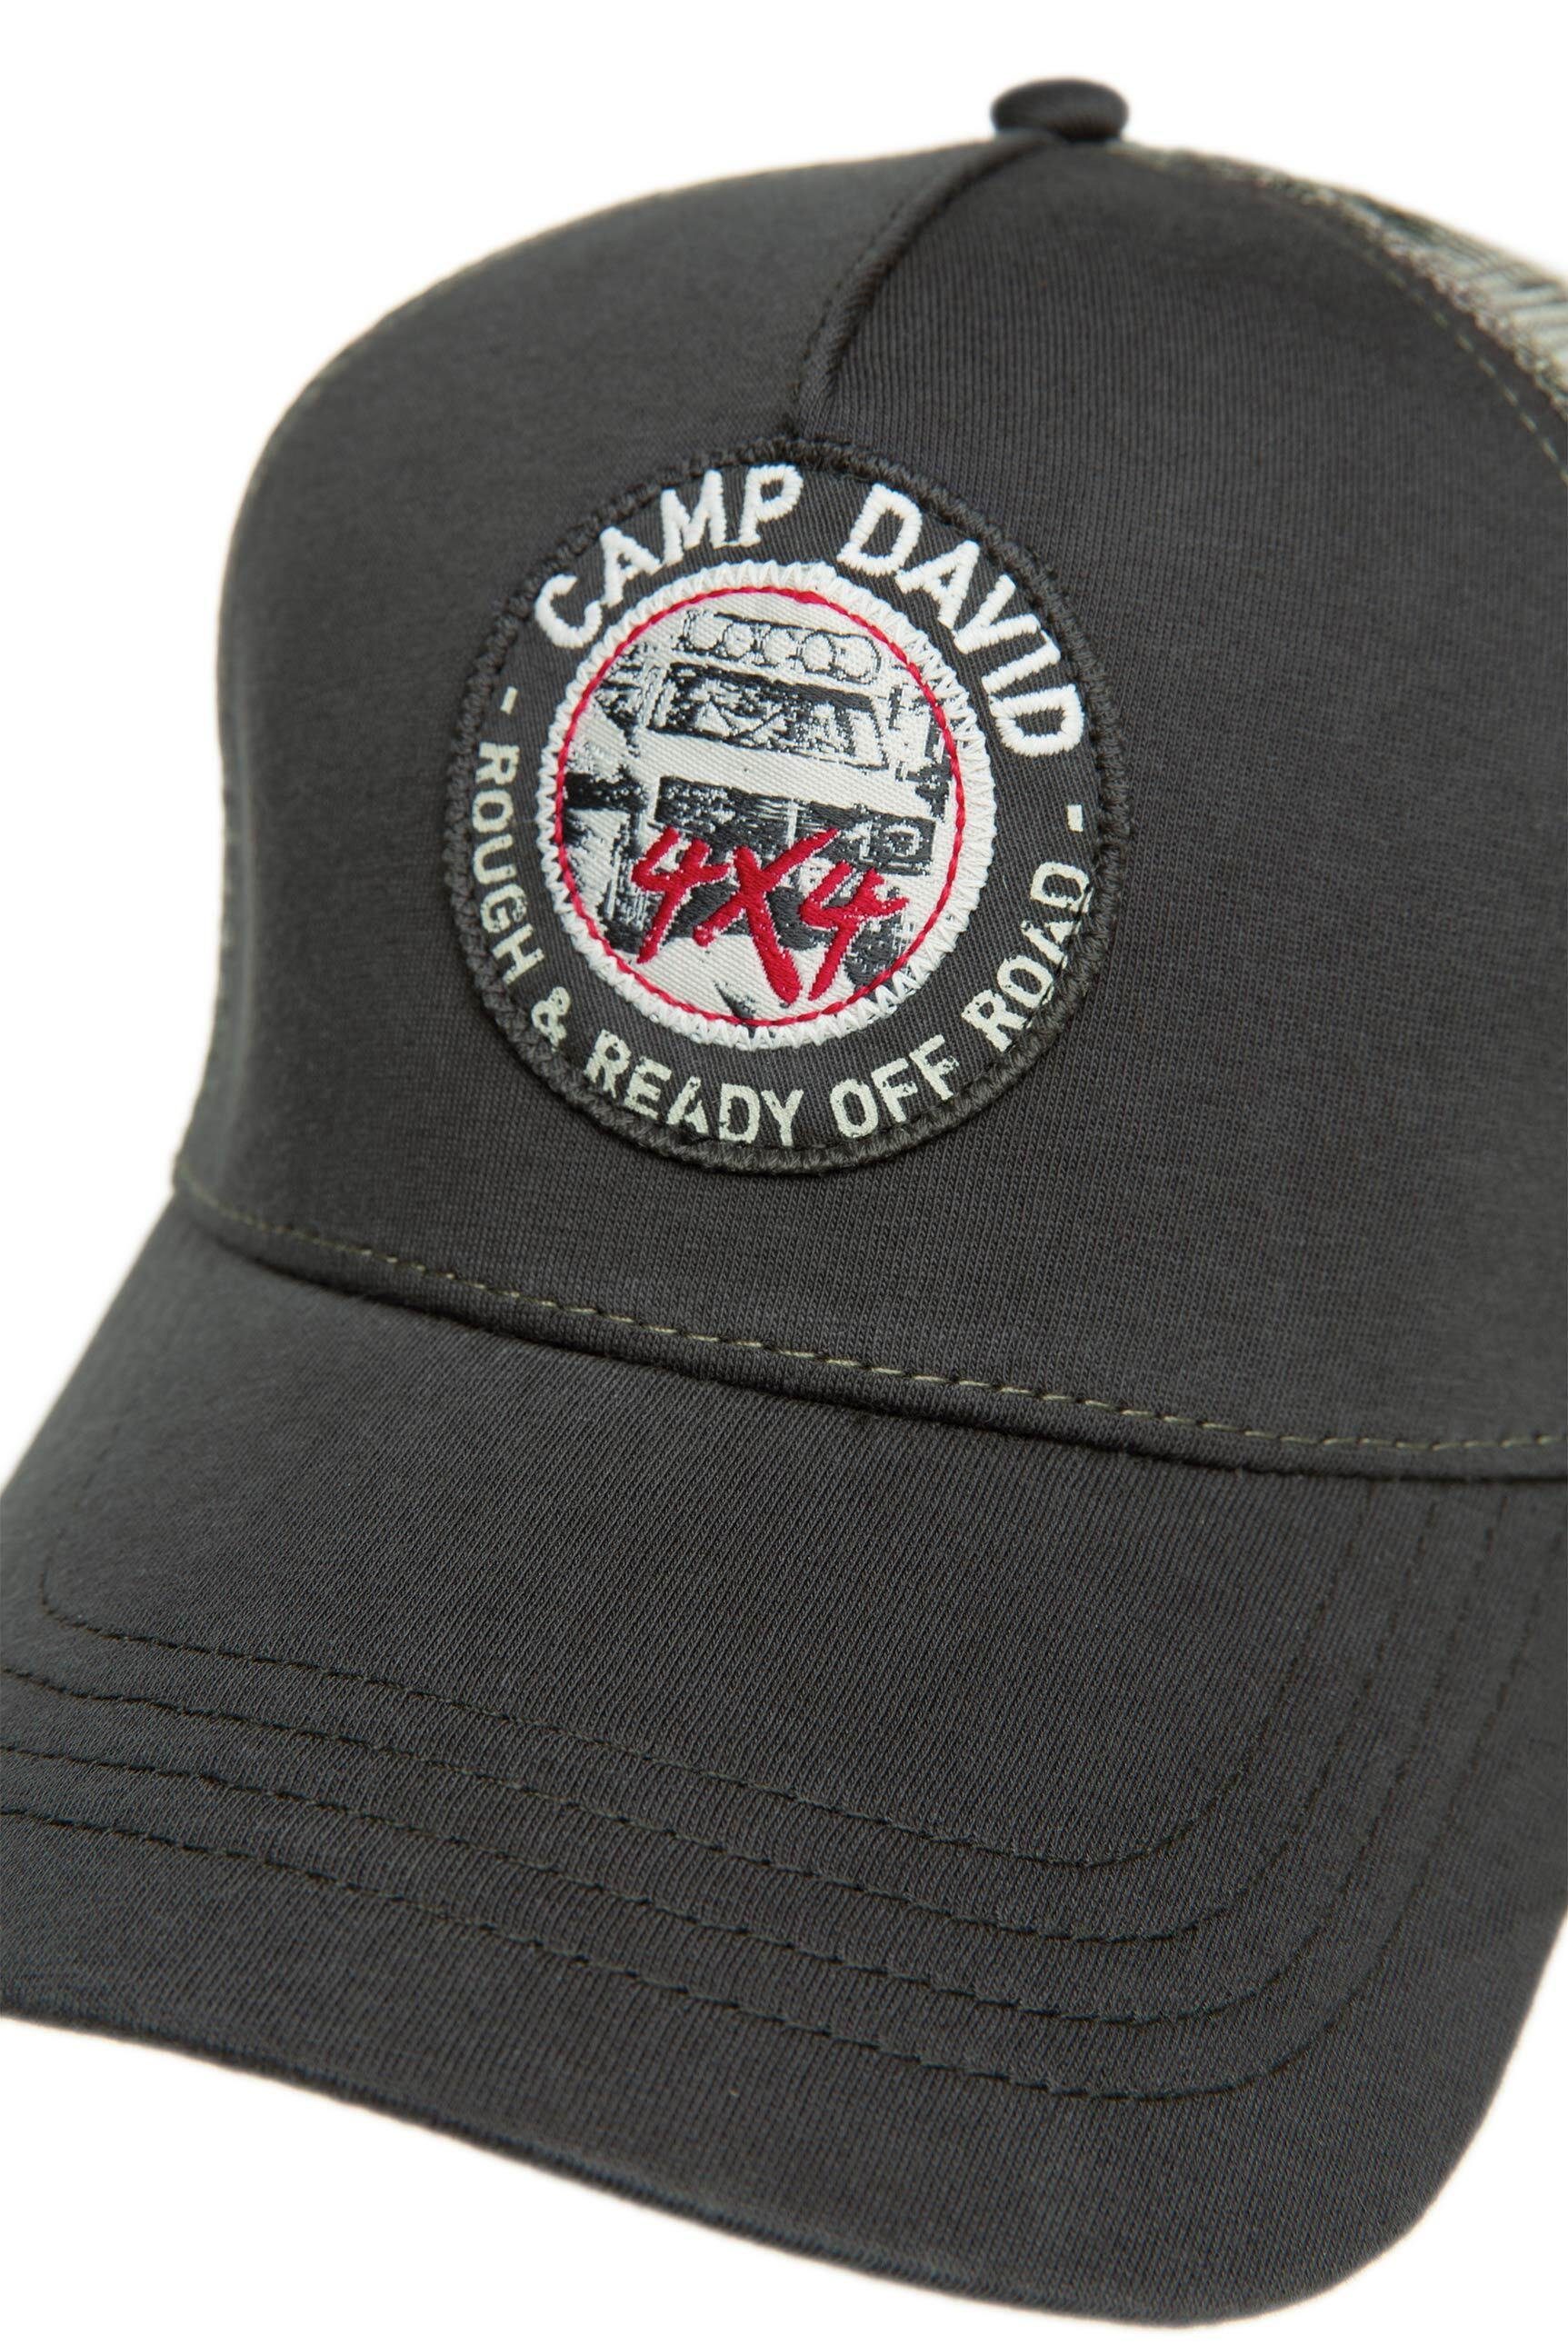 CAMP DAVID Trucker mit hinten Cap Netzeinsatz